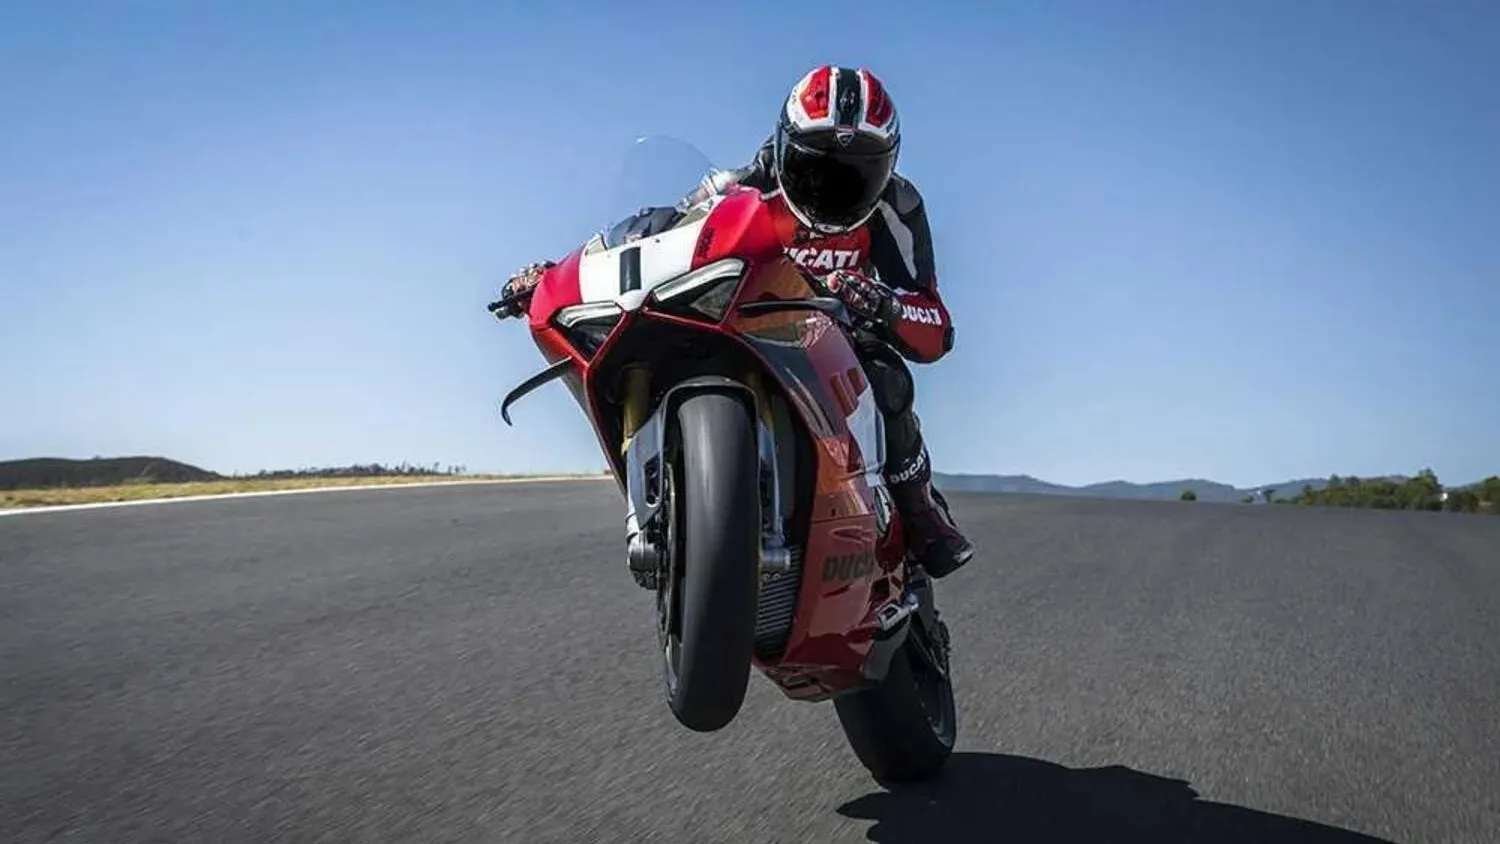 La nueva Ducati Panigale V4 R presume de motor con 240,5 CV